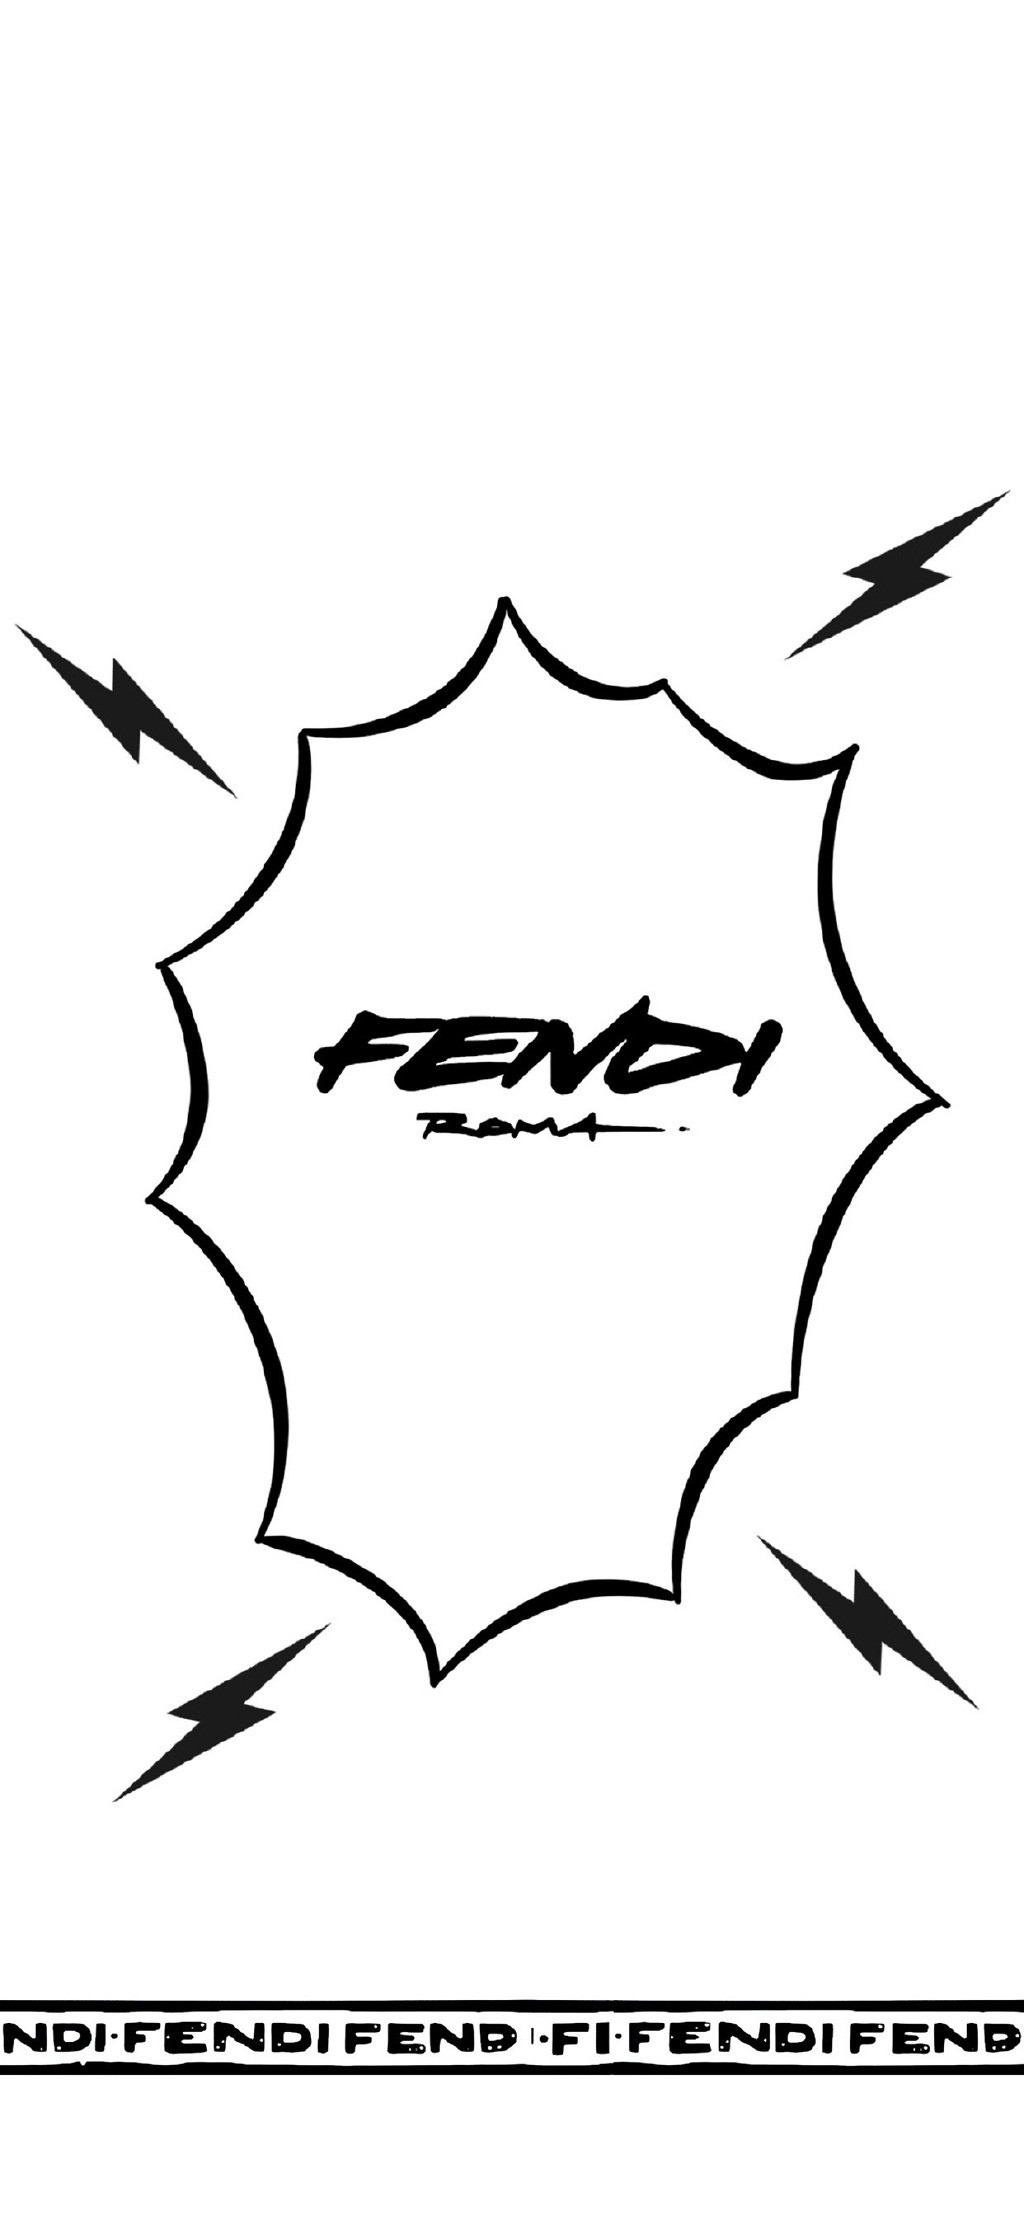 Fendi创意潮流个性高清手机壁纸